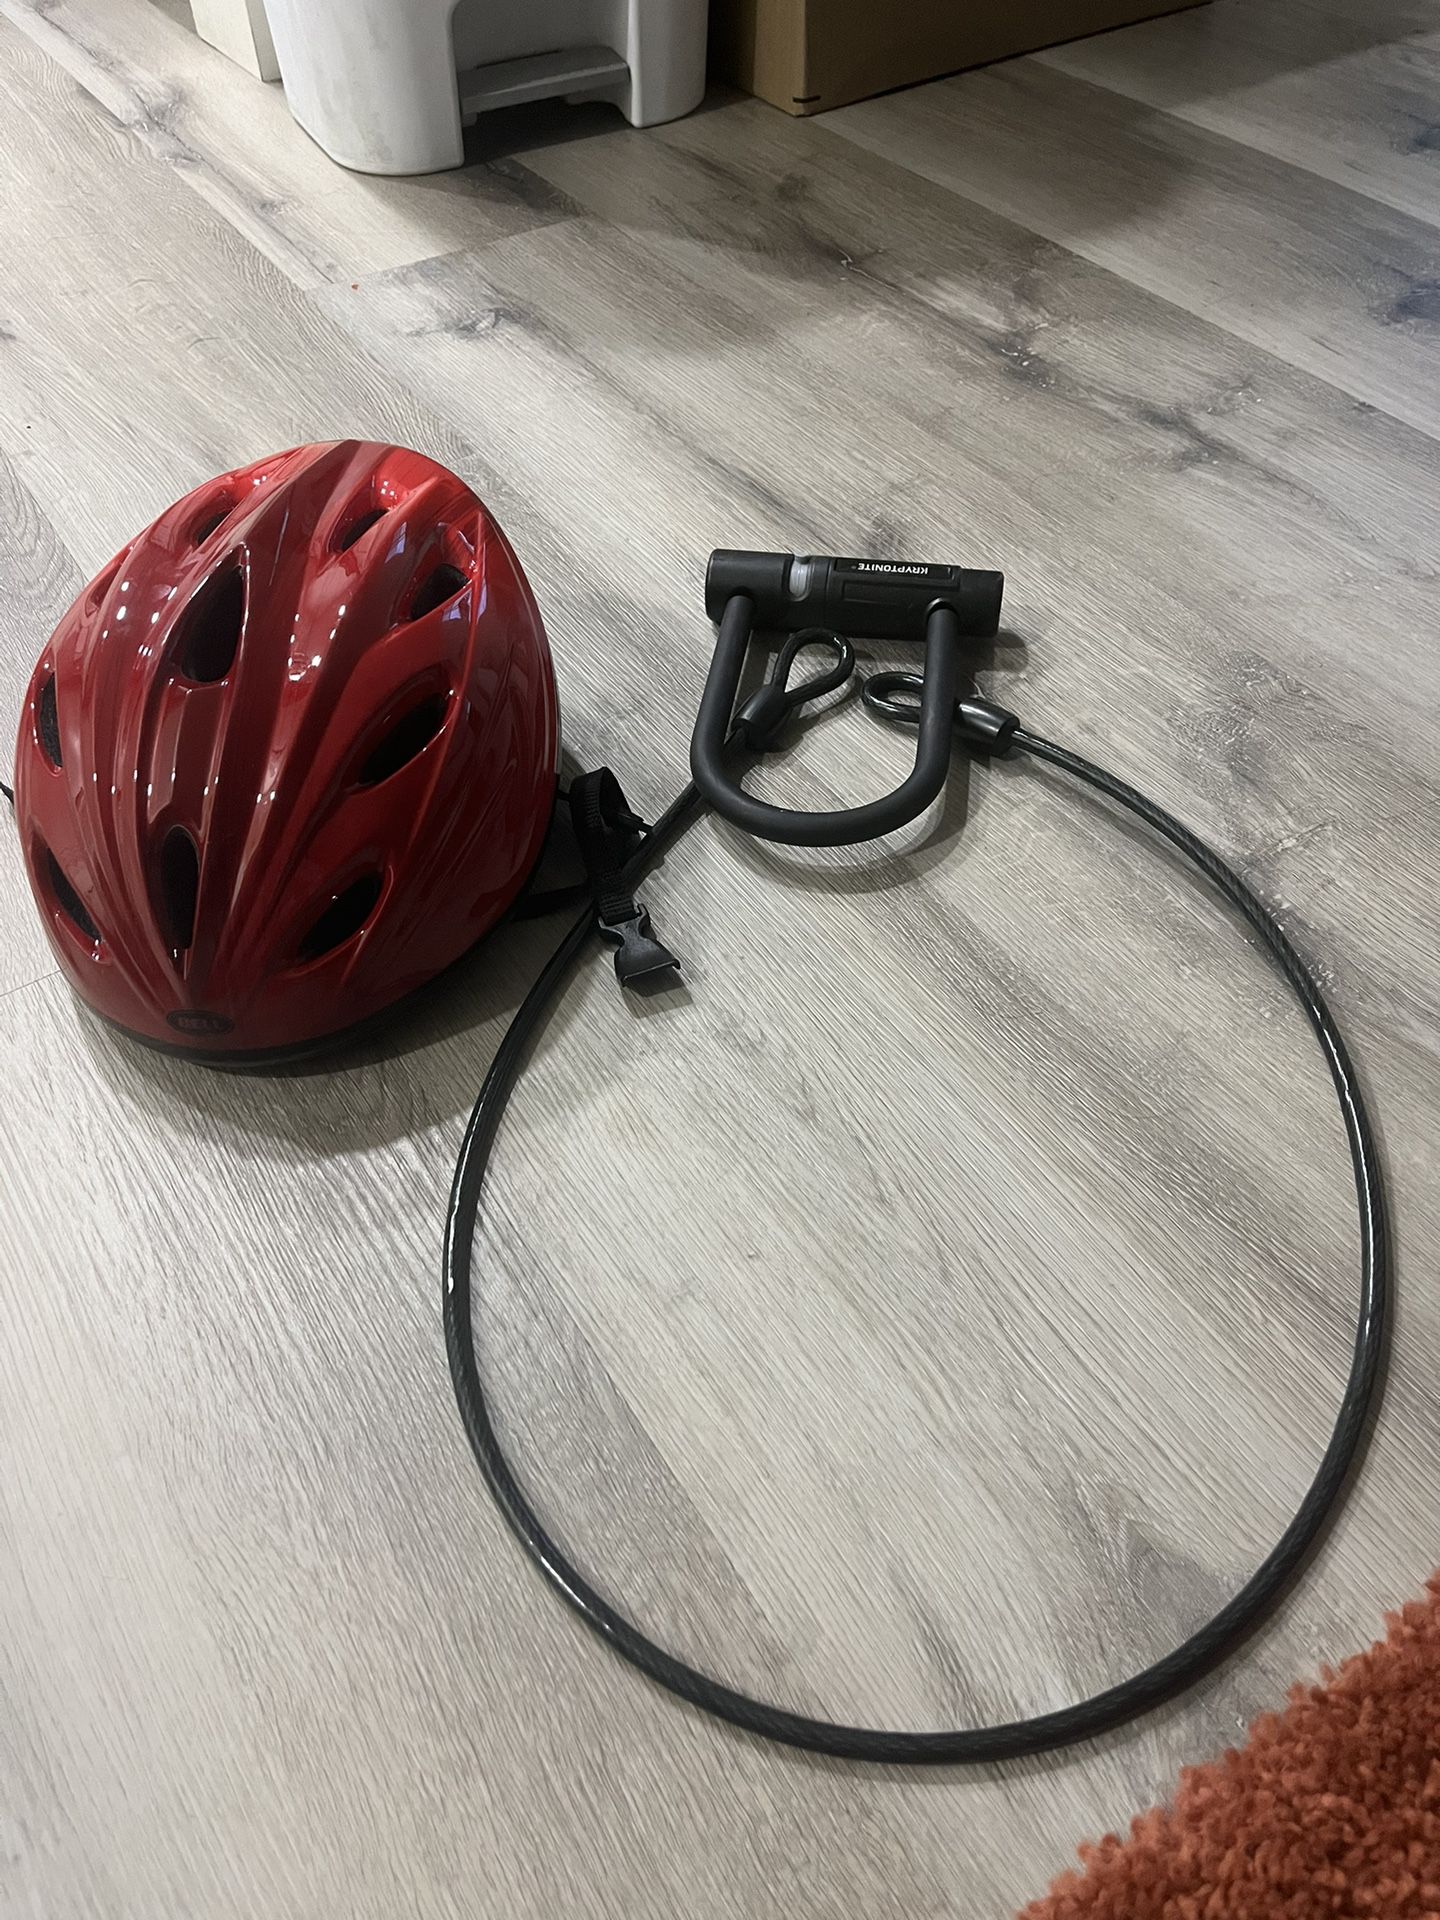 Adult Bike Helmet And U Lock